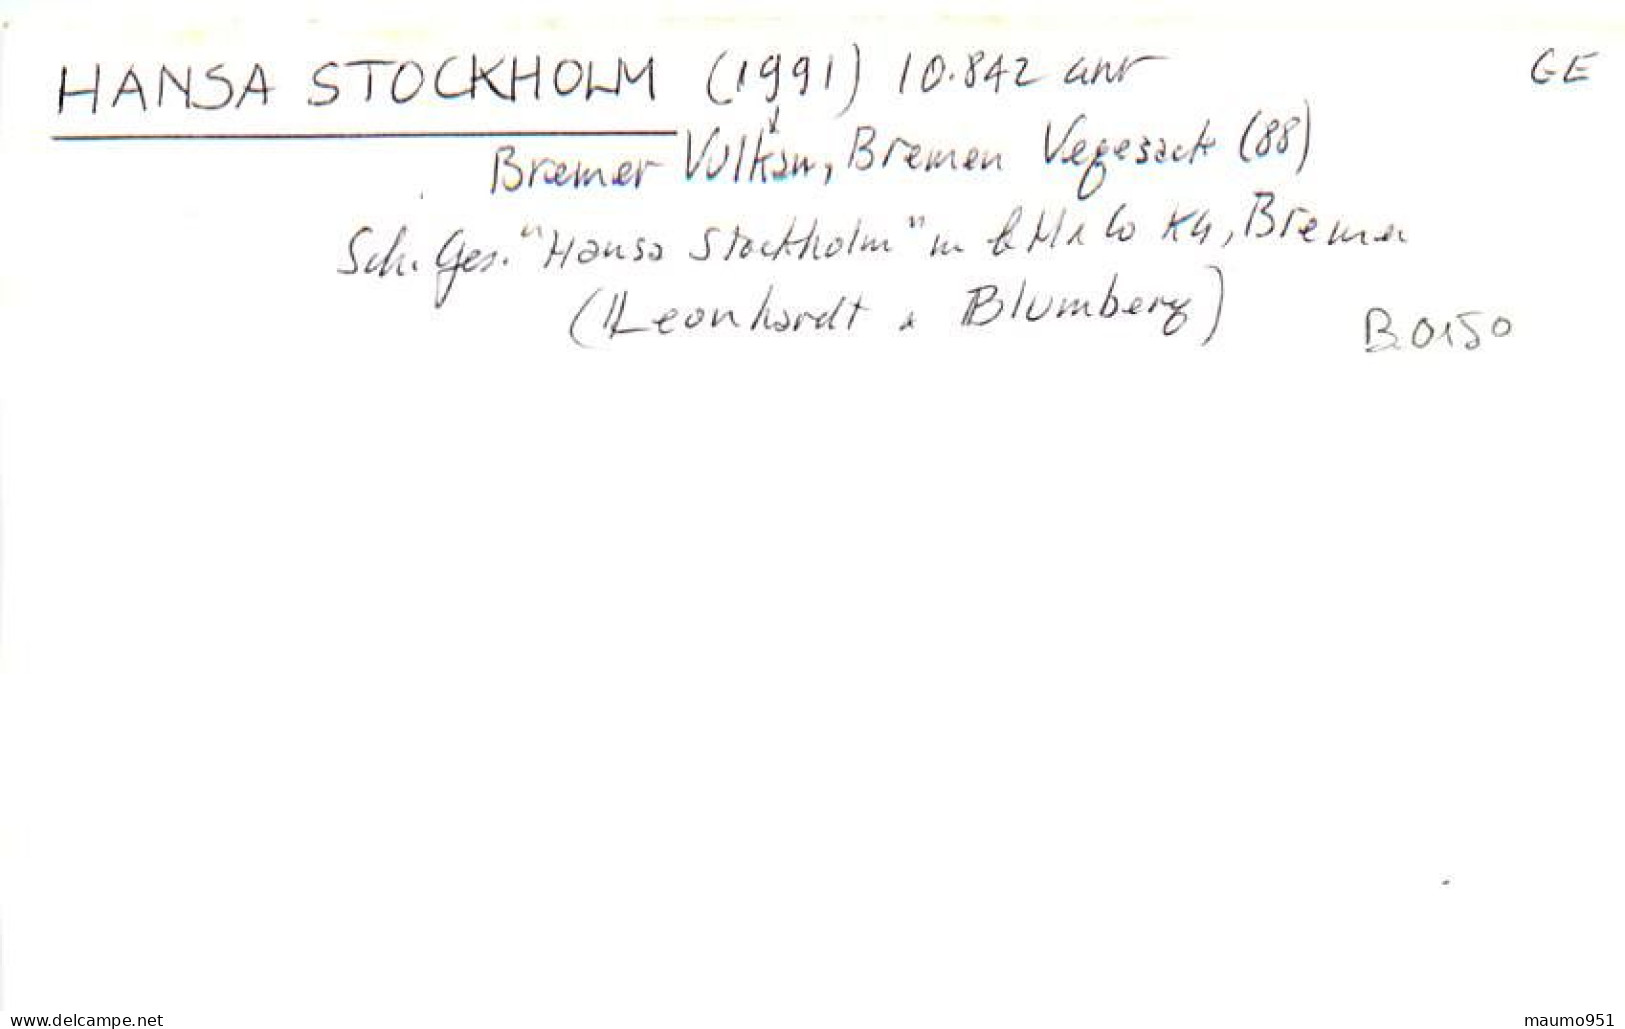 150 CLICHE BATEAU COMMERCE - LE HANSA STOCKHOLM 1991 - CATEGORIE 10842TONNES - FORMAT CPA N° B 0150 - Schiffe